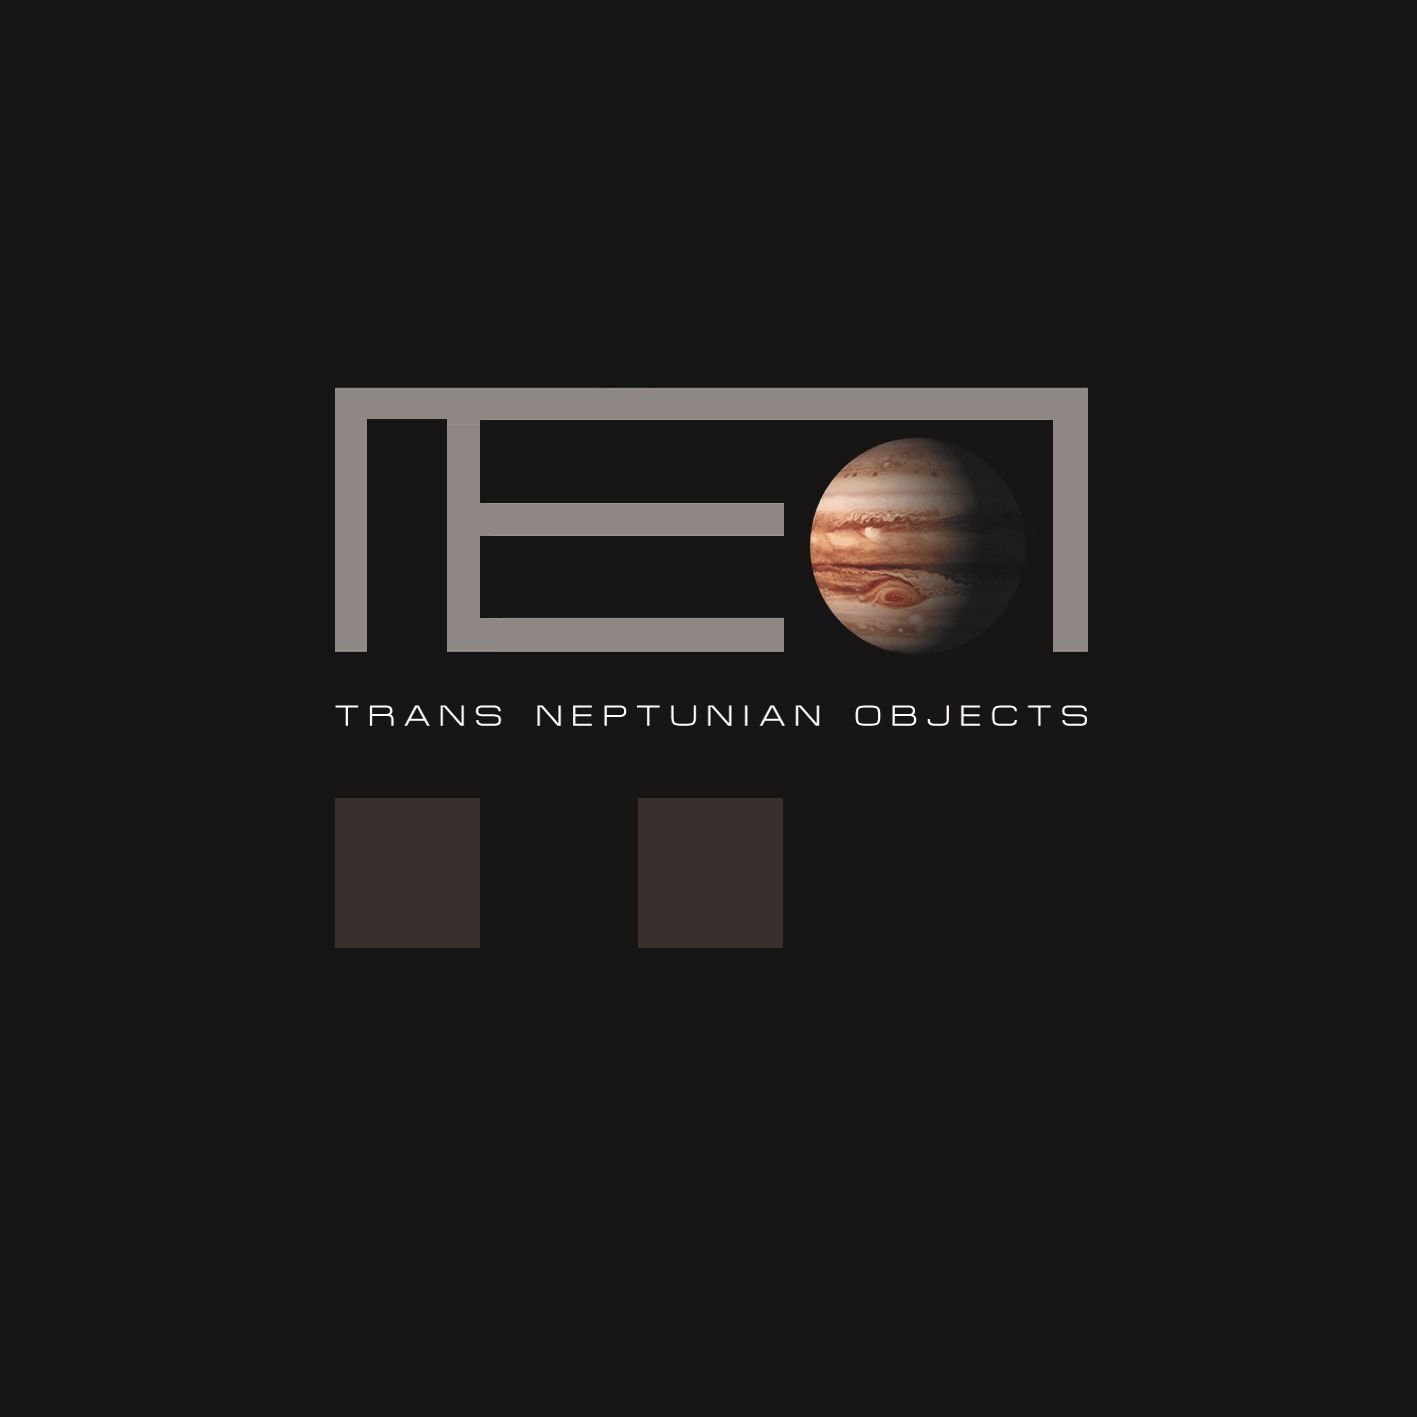 N E O (Near Earth Orbit) - Trans Neptunian Objects